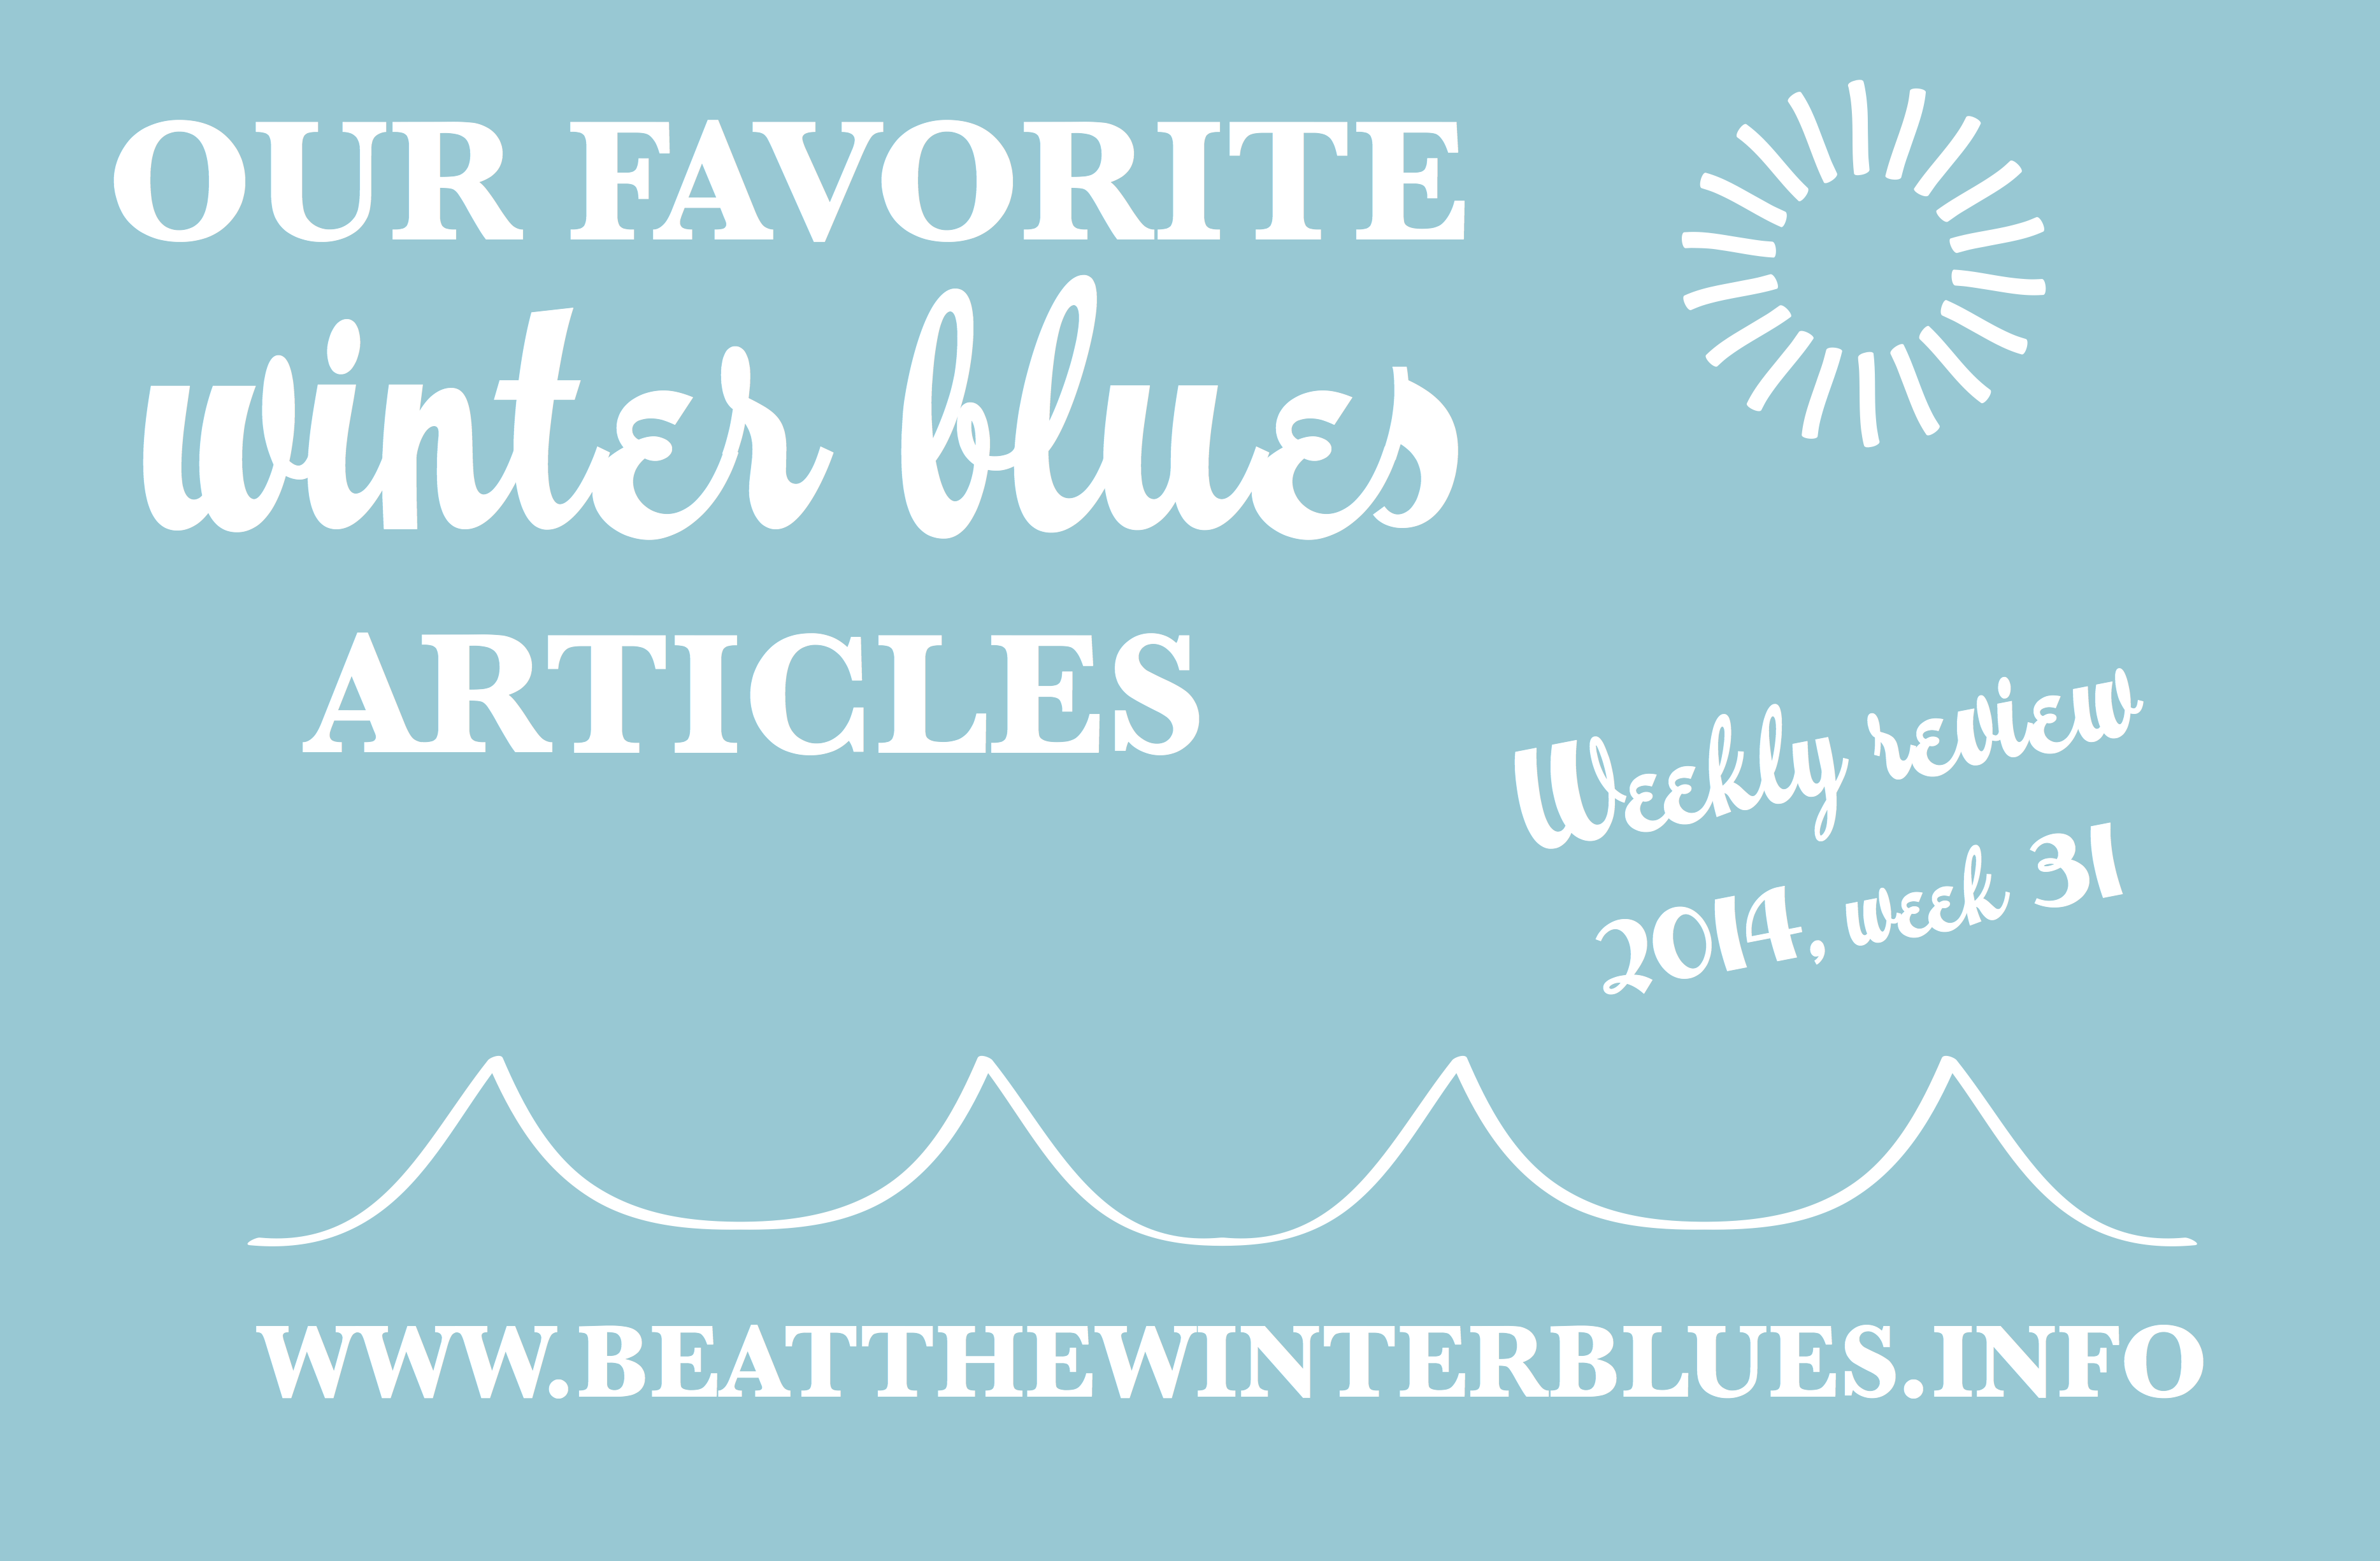 Weekly review – 2014 week 31